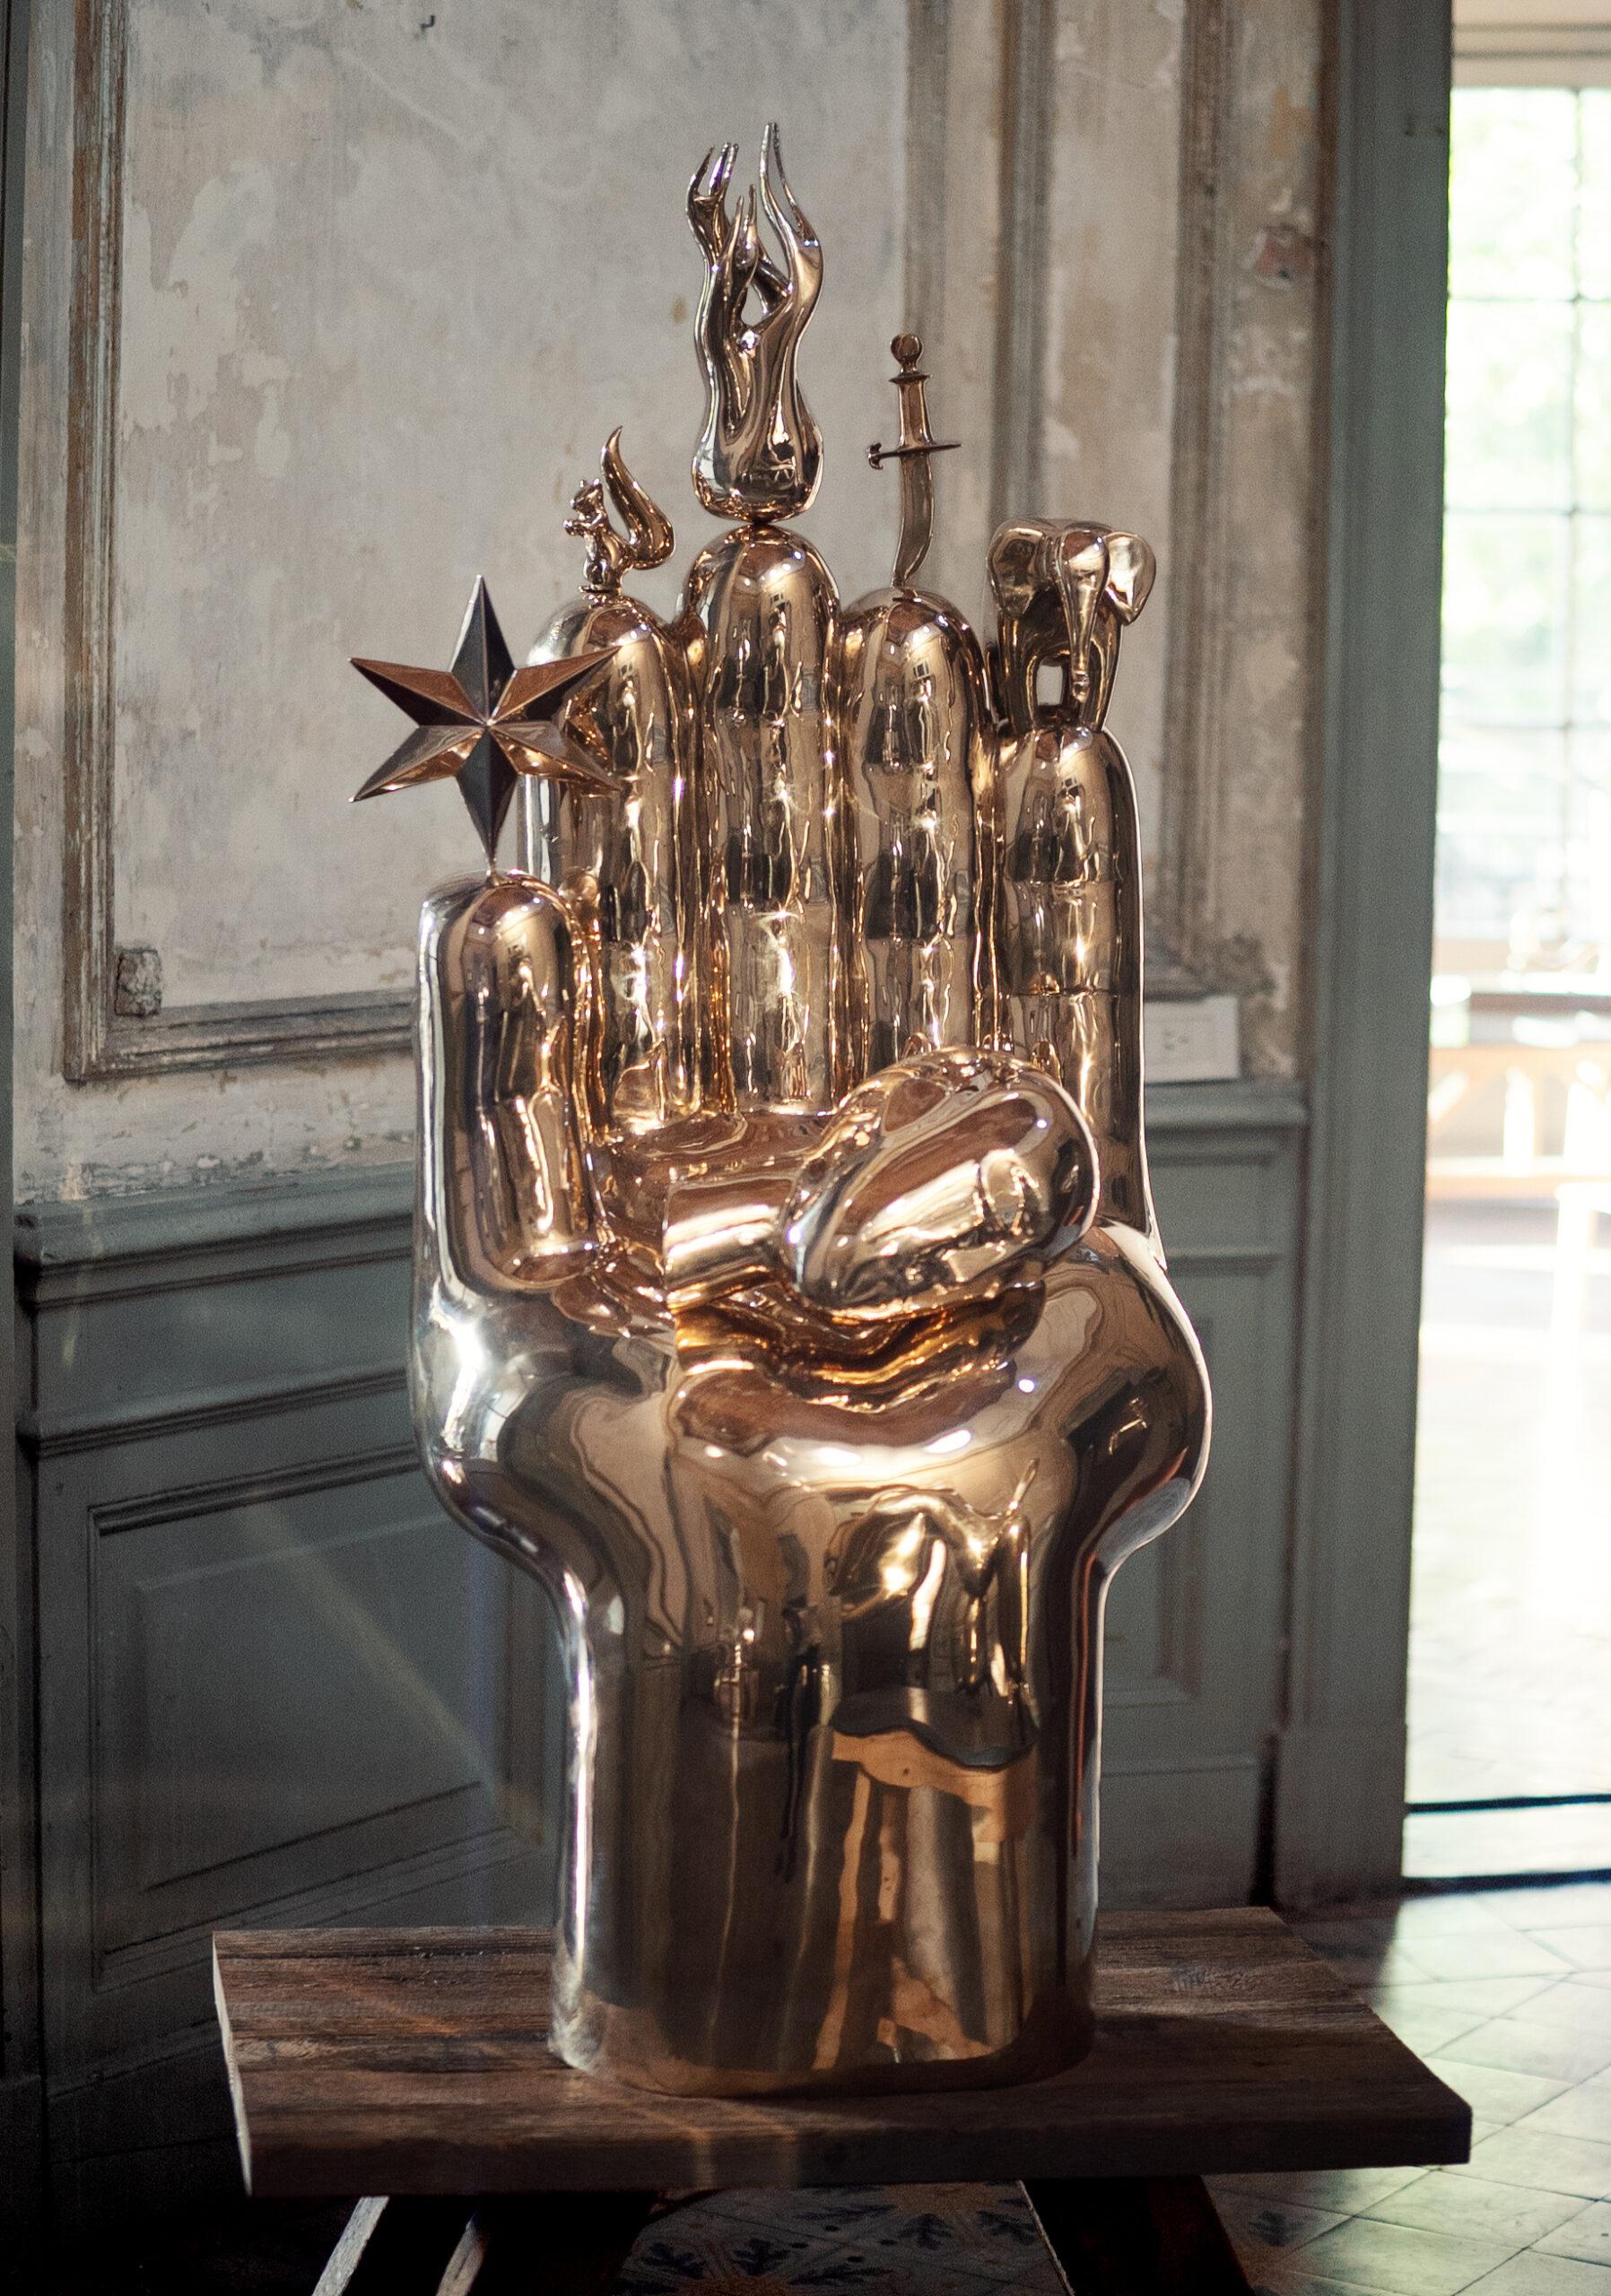 Hand ist eine polierte Bronzeskulptur des zeitgenössischen Künstlers Marcelo Martin Burgos mit den Maßen 126 × 50 × 40 cm (49,6 × 19,7 × 15,7 in). 
Die Skulptur ist signiert und nummeriert, gehört zu einer limitierten Auflage von 8 Exemplaren und